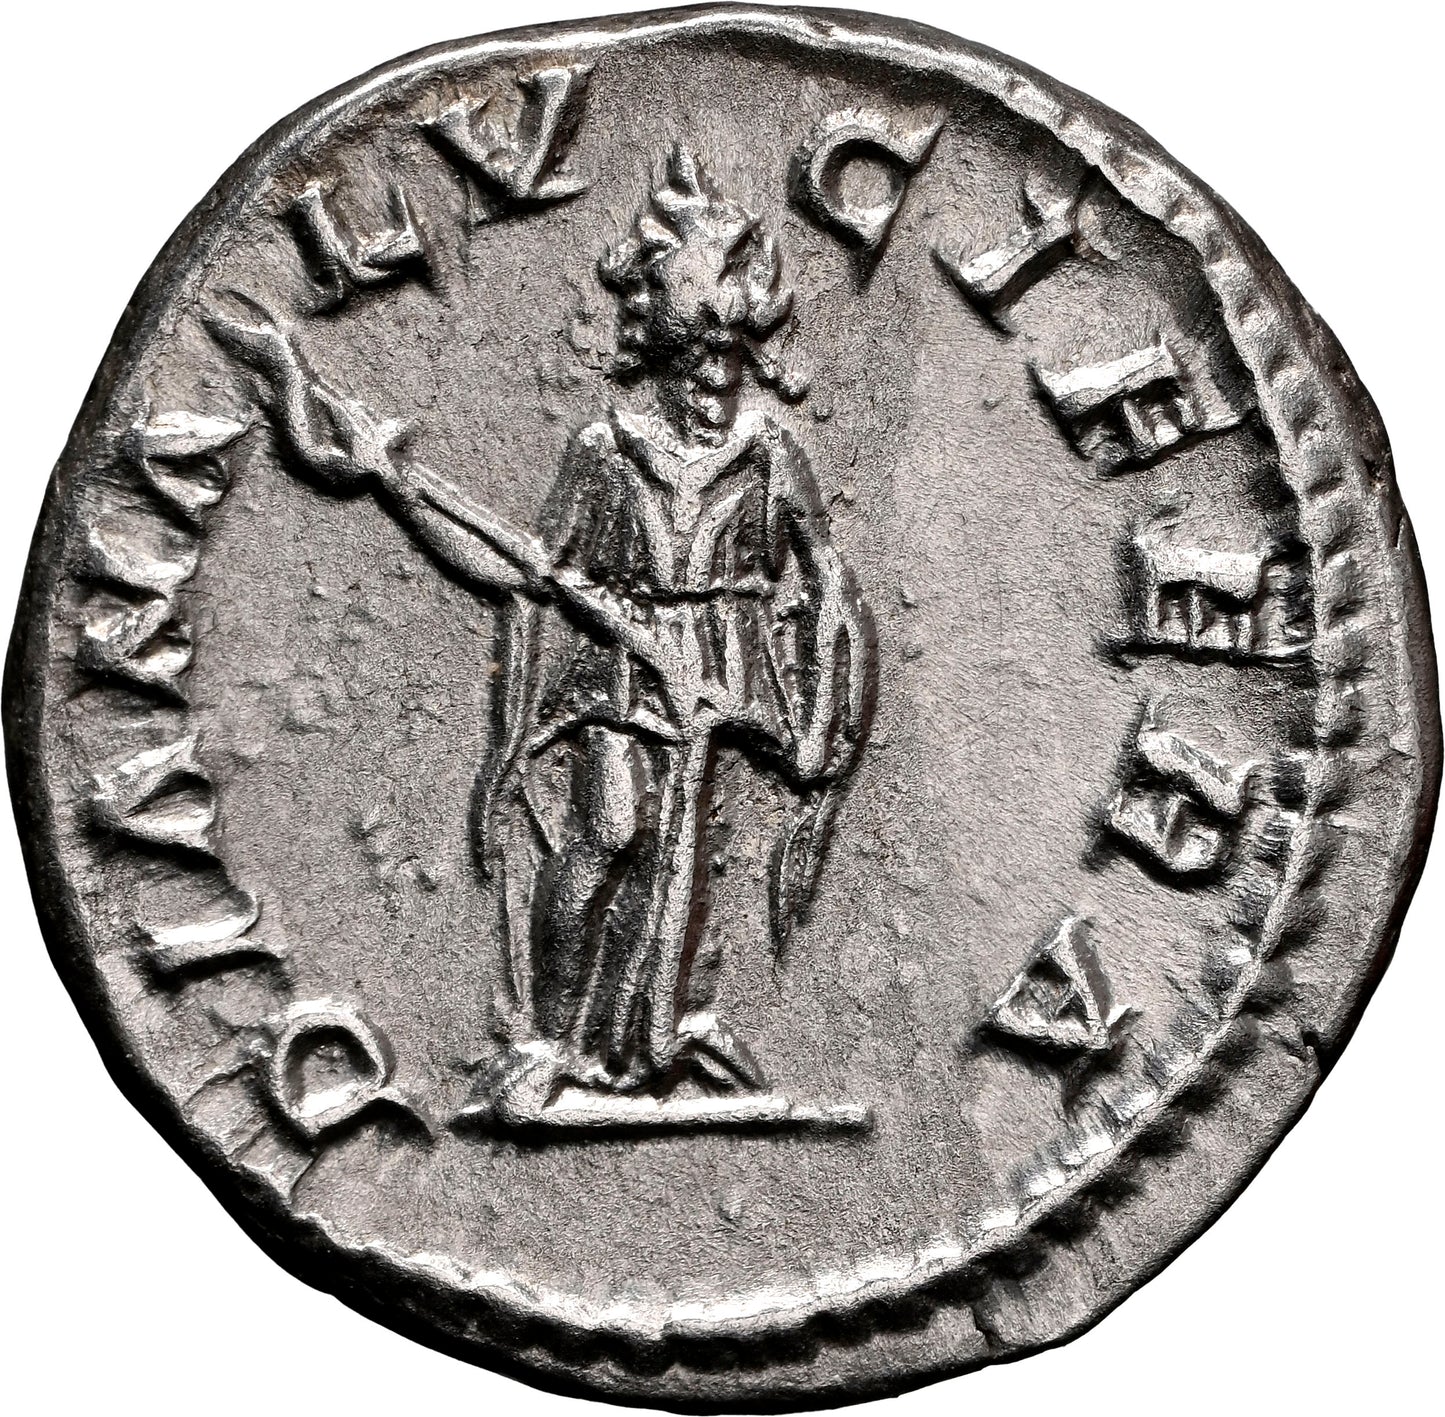 Roman Empire - Julia Domna - Silver Denarius - NGC Ch XF - RIC:373a